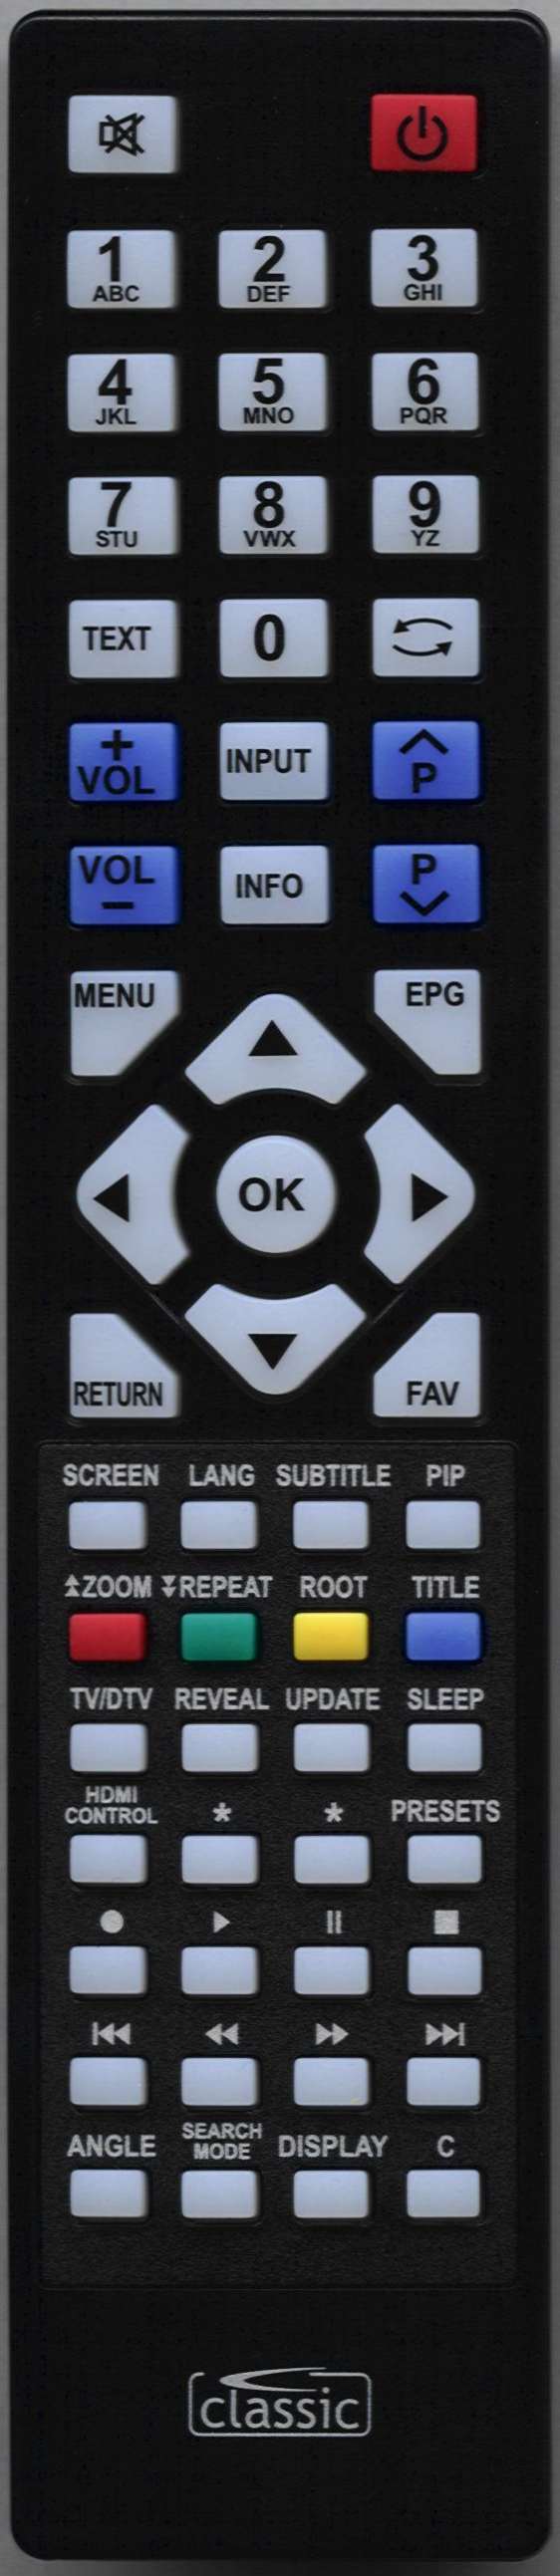 LUXOR 19875 Remote Control Alternative